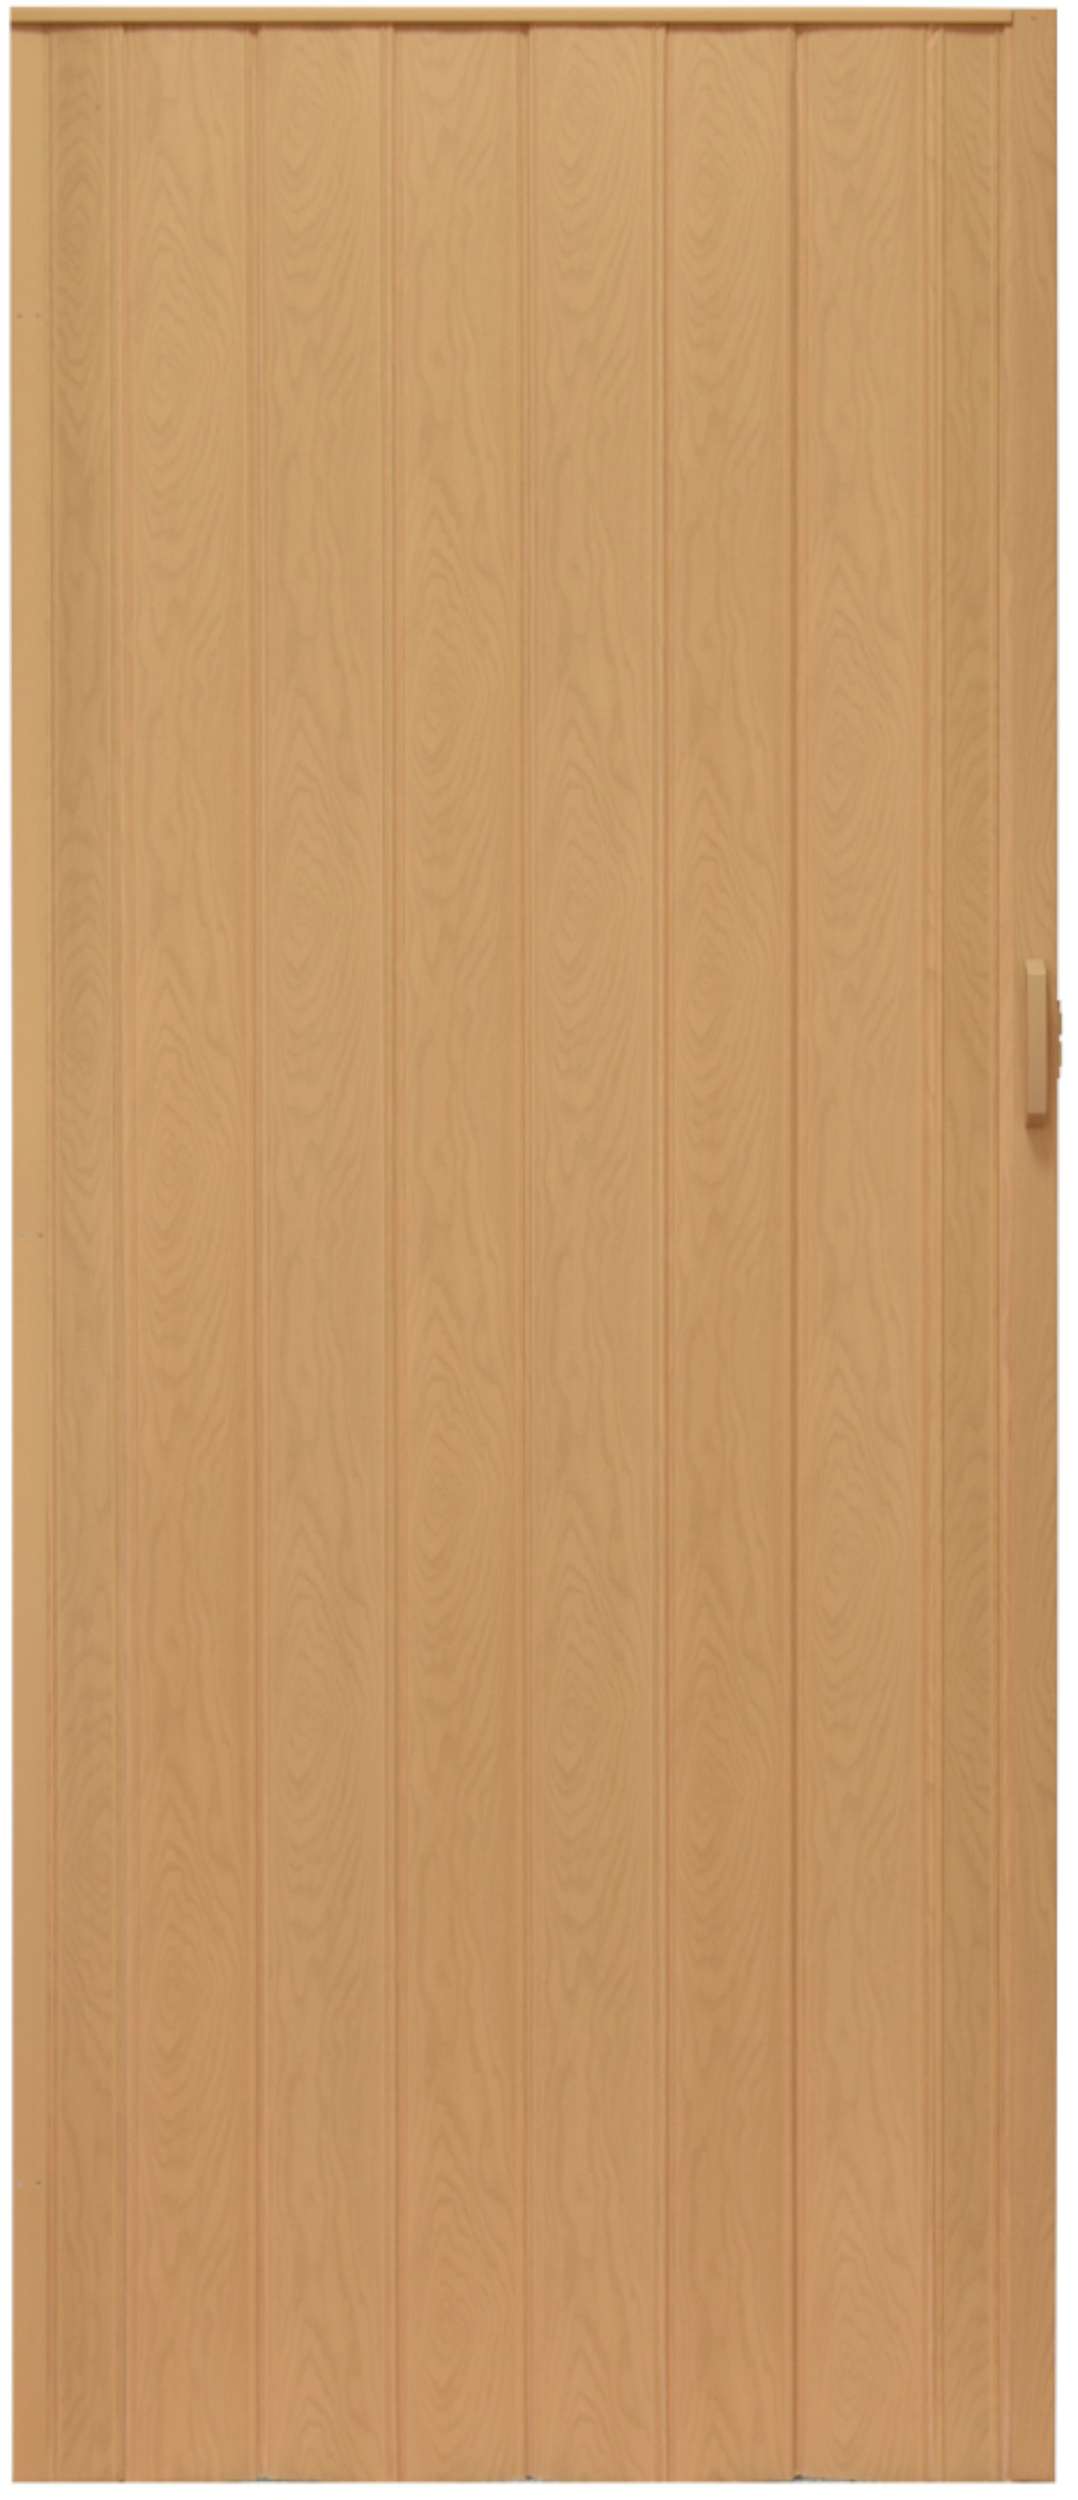 Drzwi harmonijkowe 004 - 100 cm - 02 jasny dąb